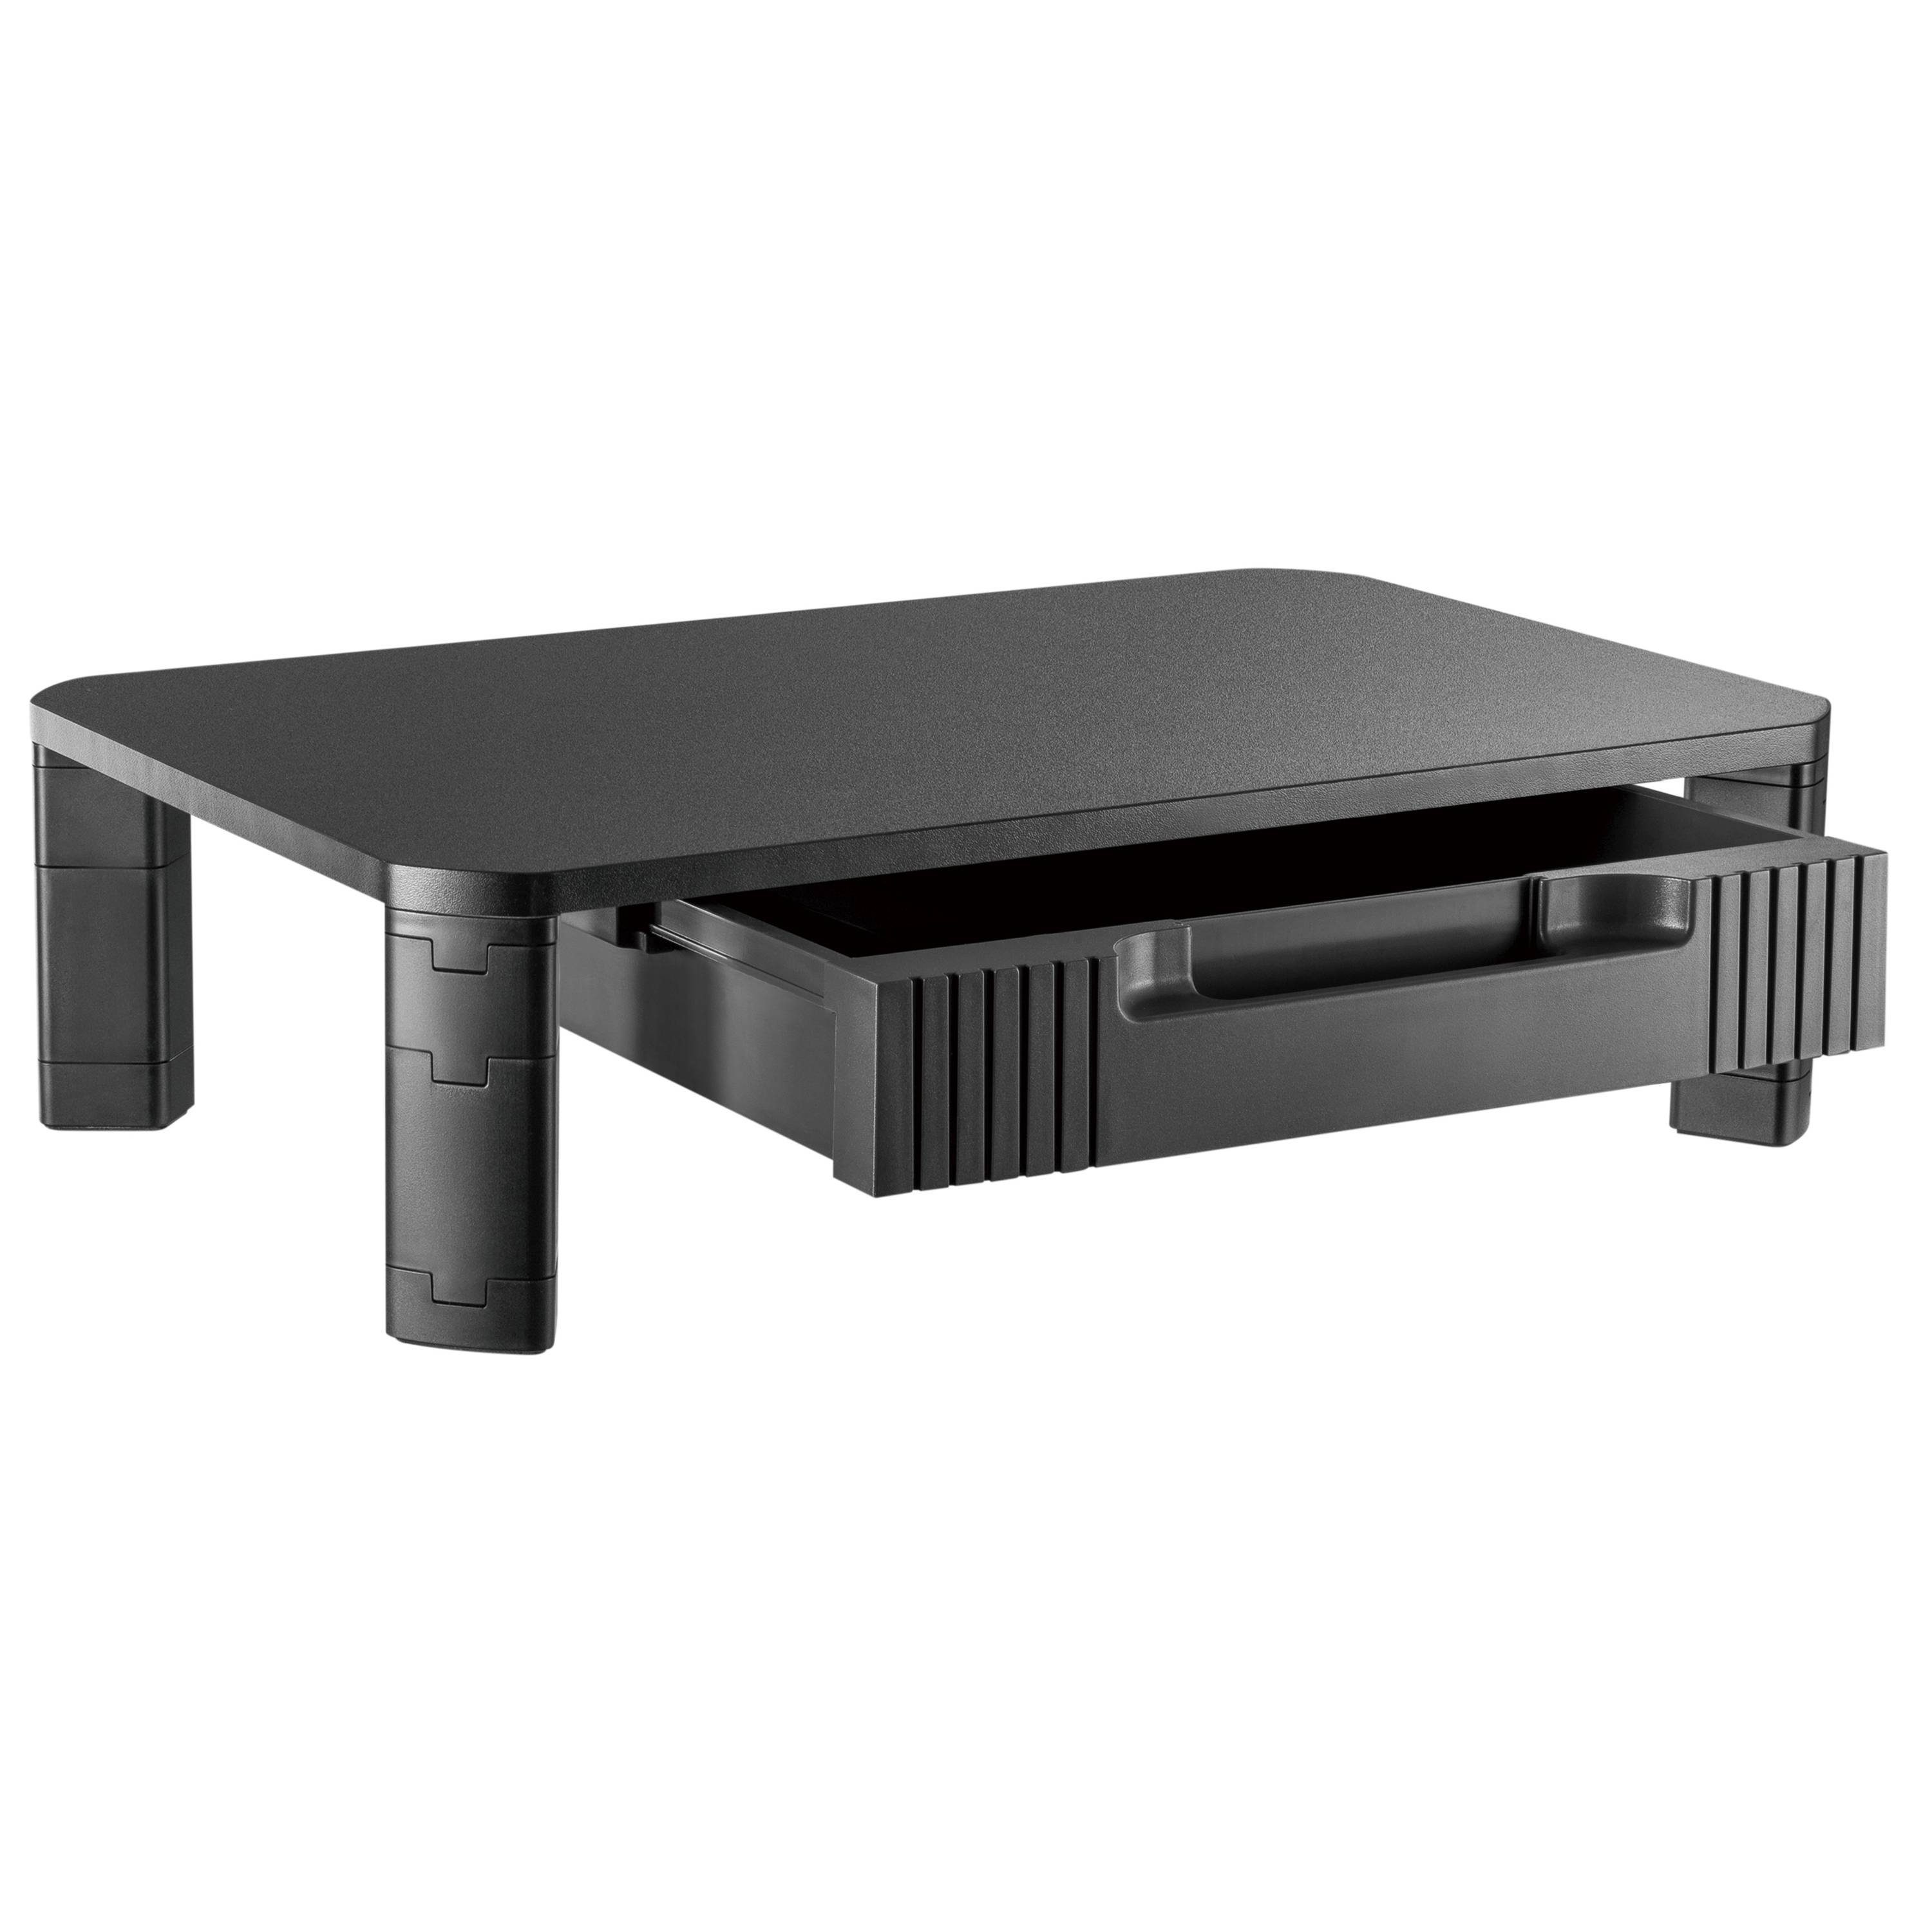 RICOO Schreibtischaufsatz WM9, Monitorständer Monitorerhöhung Bildschirm Aufsatz Stauraum Tisch mit